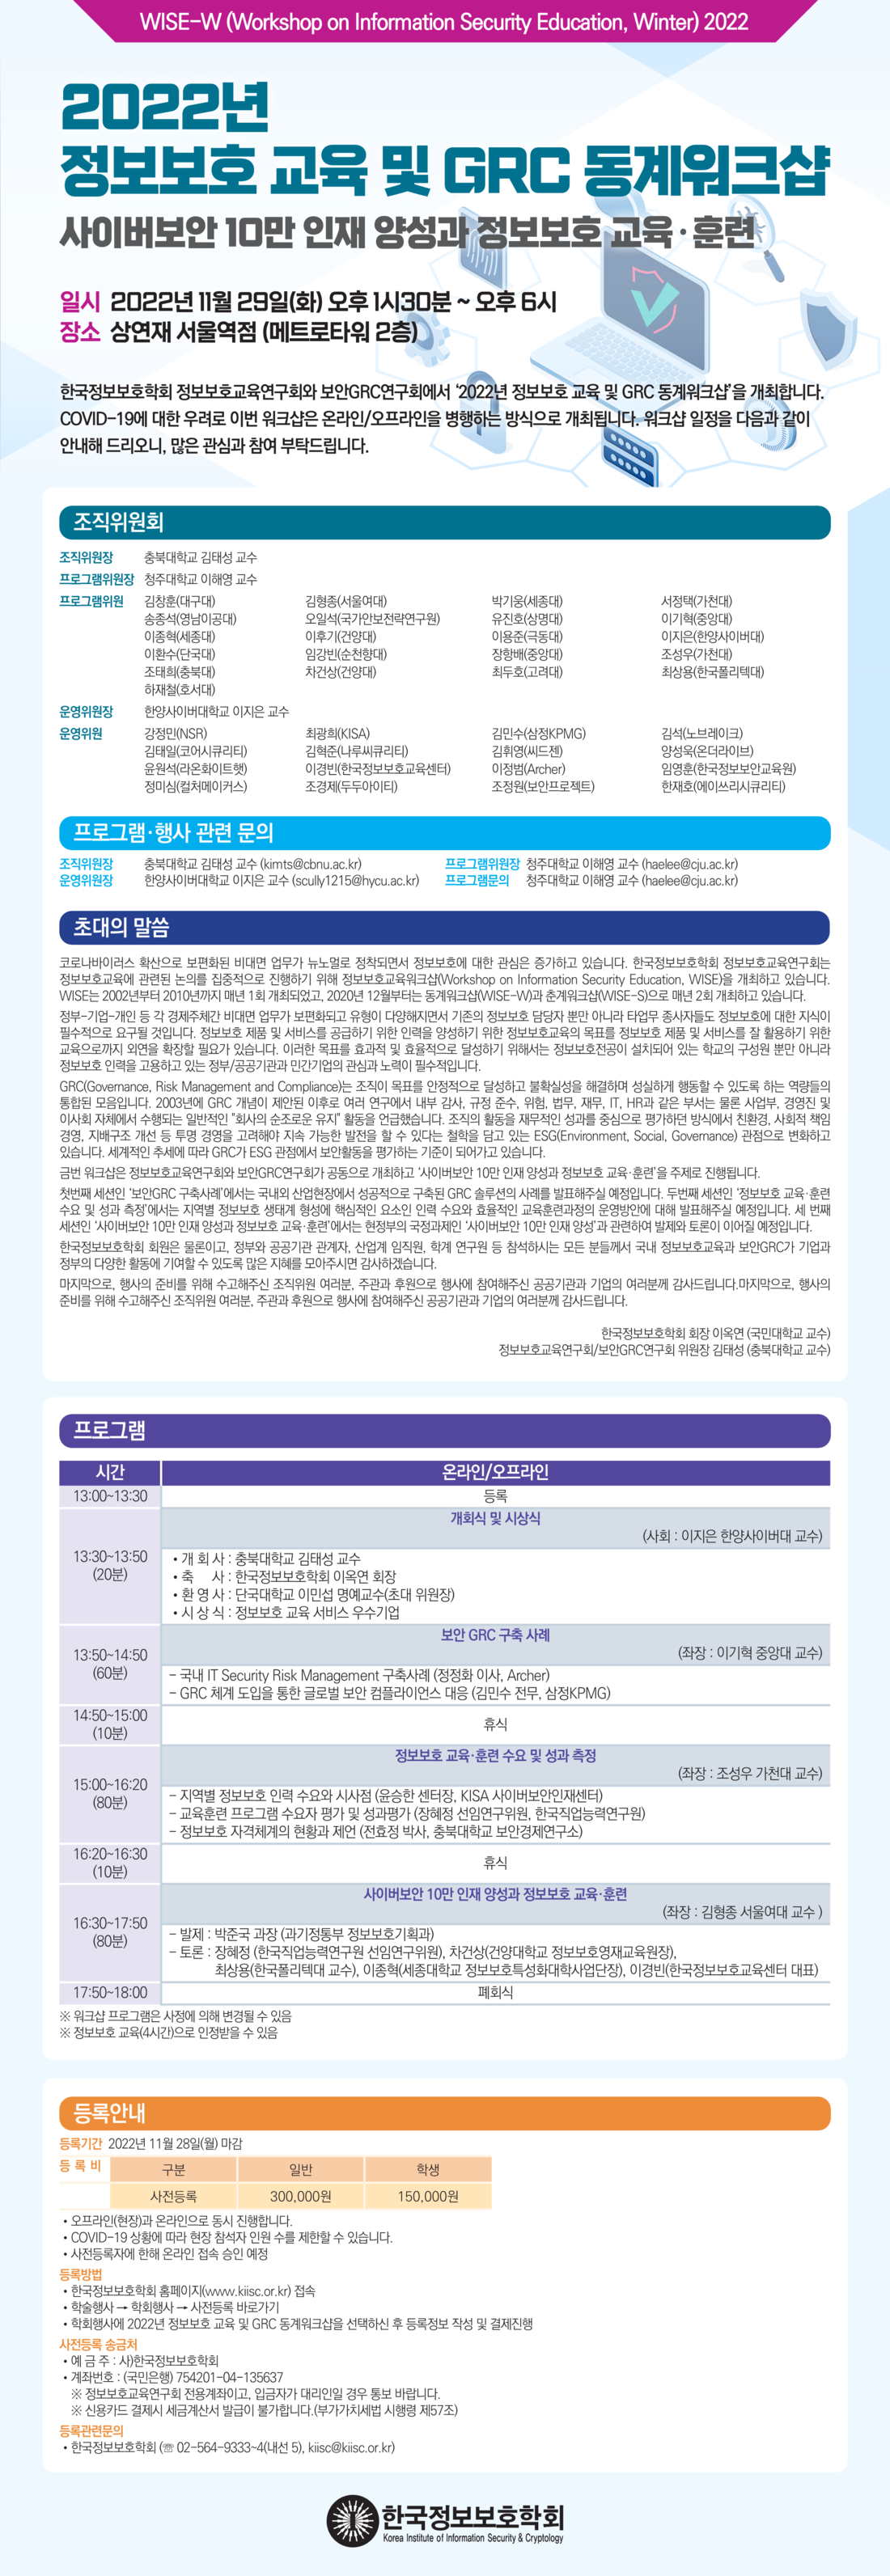 한국정보보호학회(2022년 정보보호 교육 및 GRC 동계워크샵) 웹 홍보 v3_1.png